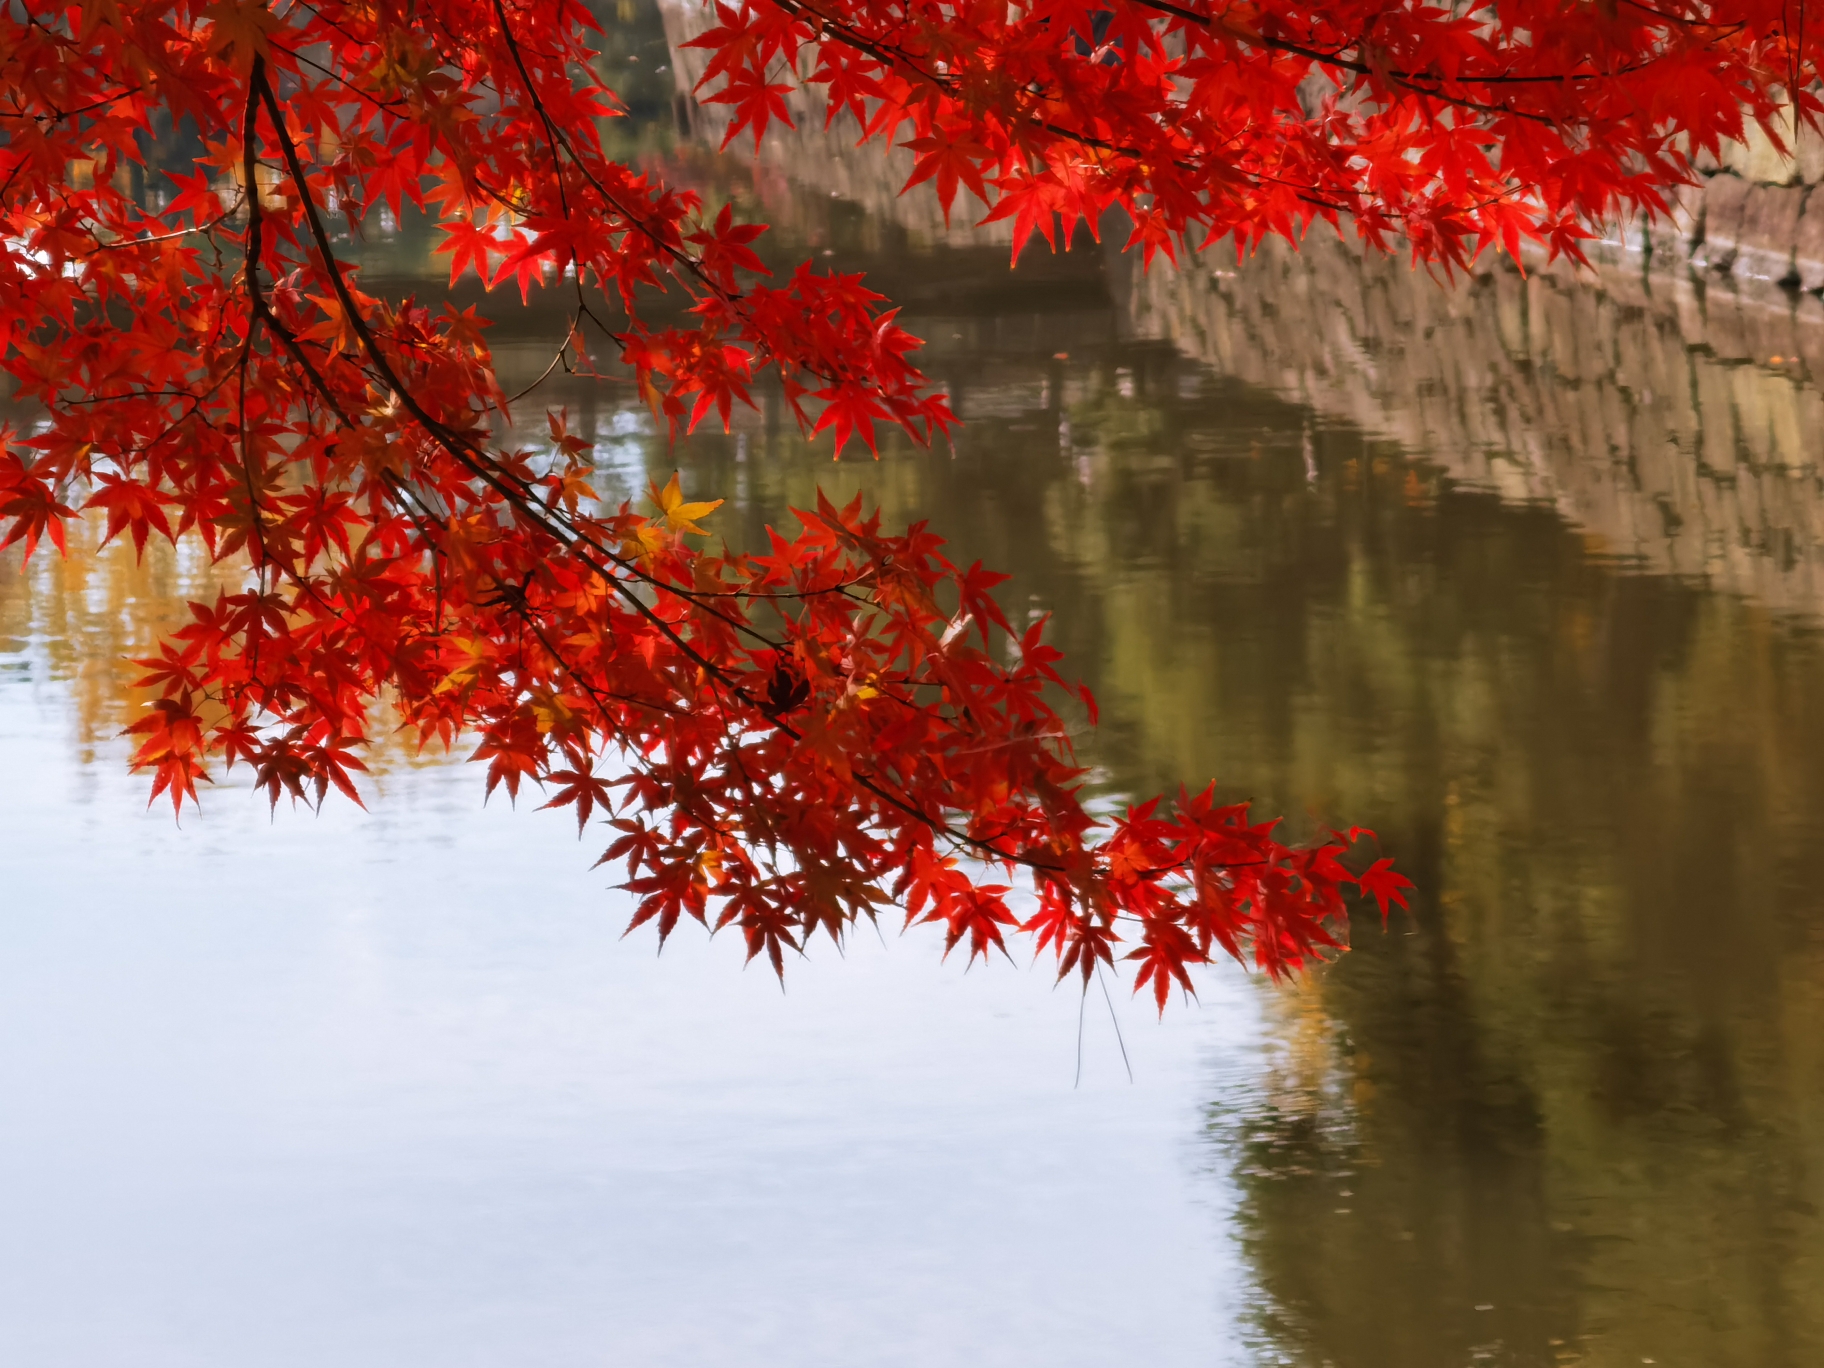 日本紅葉狩 8天看遍秋天的所有顏色 波琪家族去旅行 Go Travel